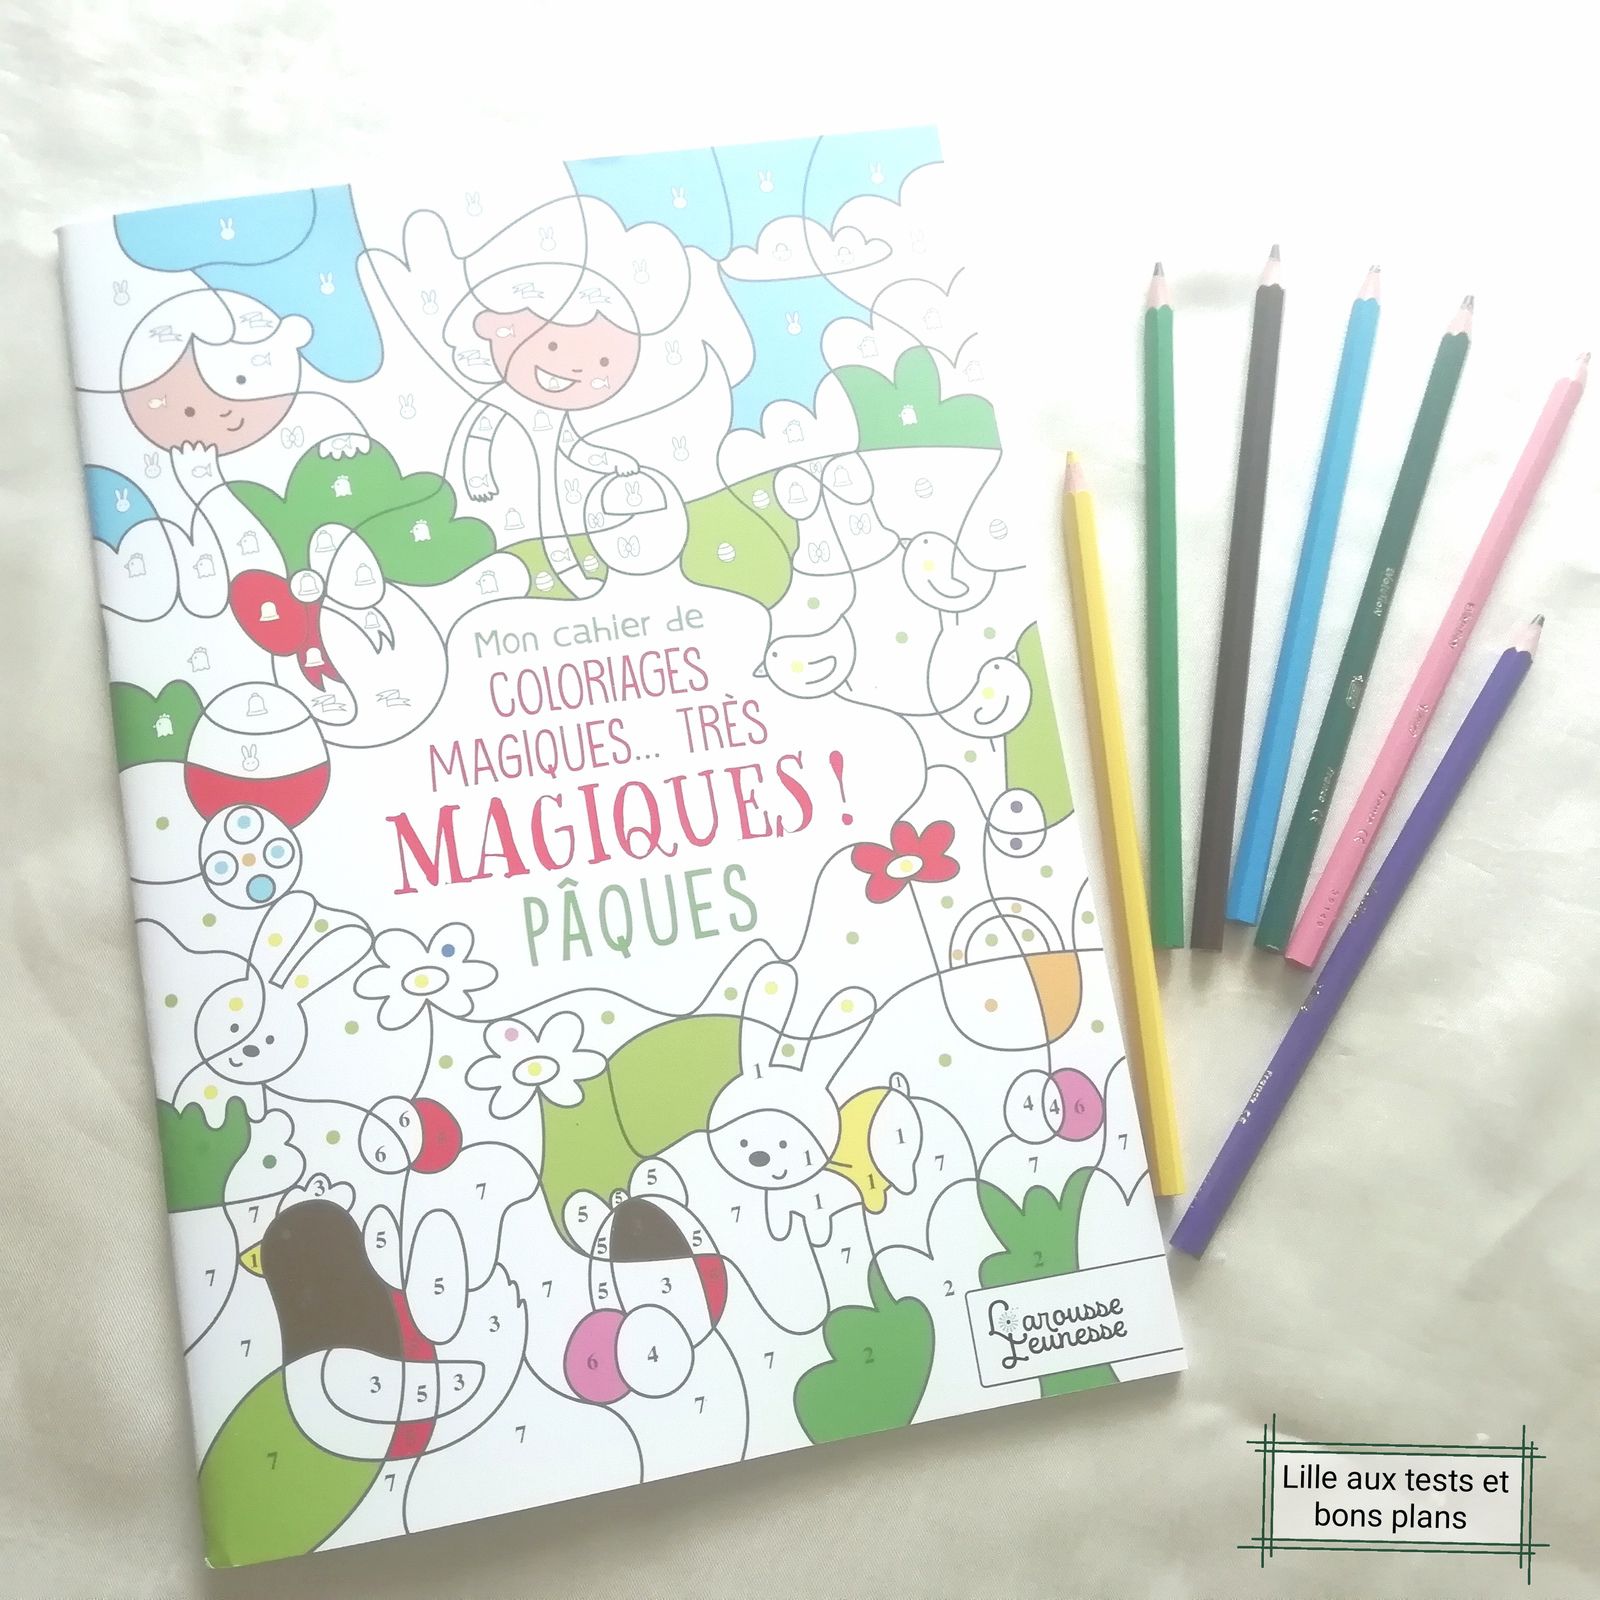 Livre : Mon cahier de coloriages magiques, très magiques! Pâques de Larousse Jeunesse